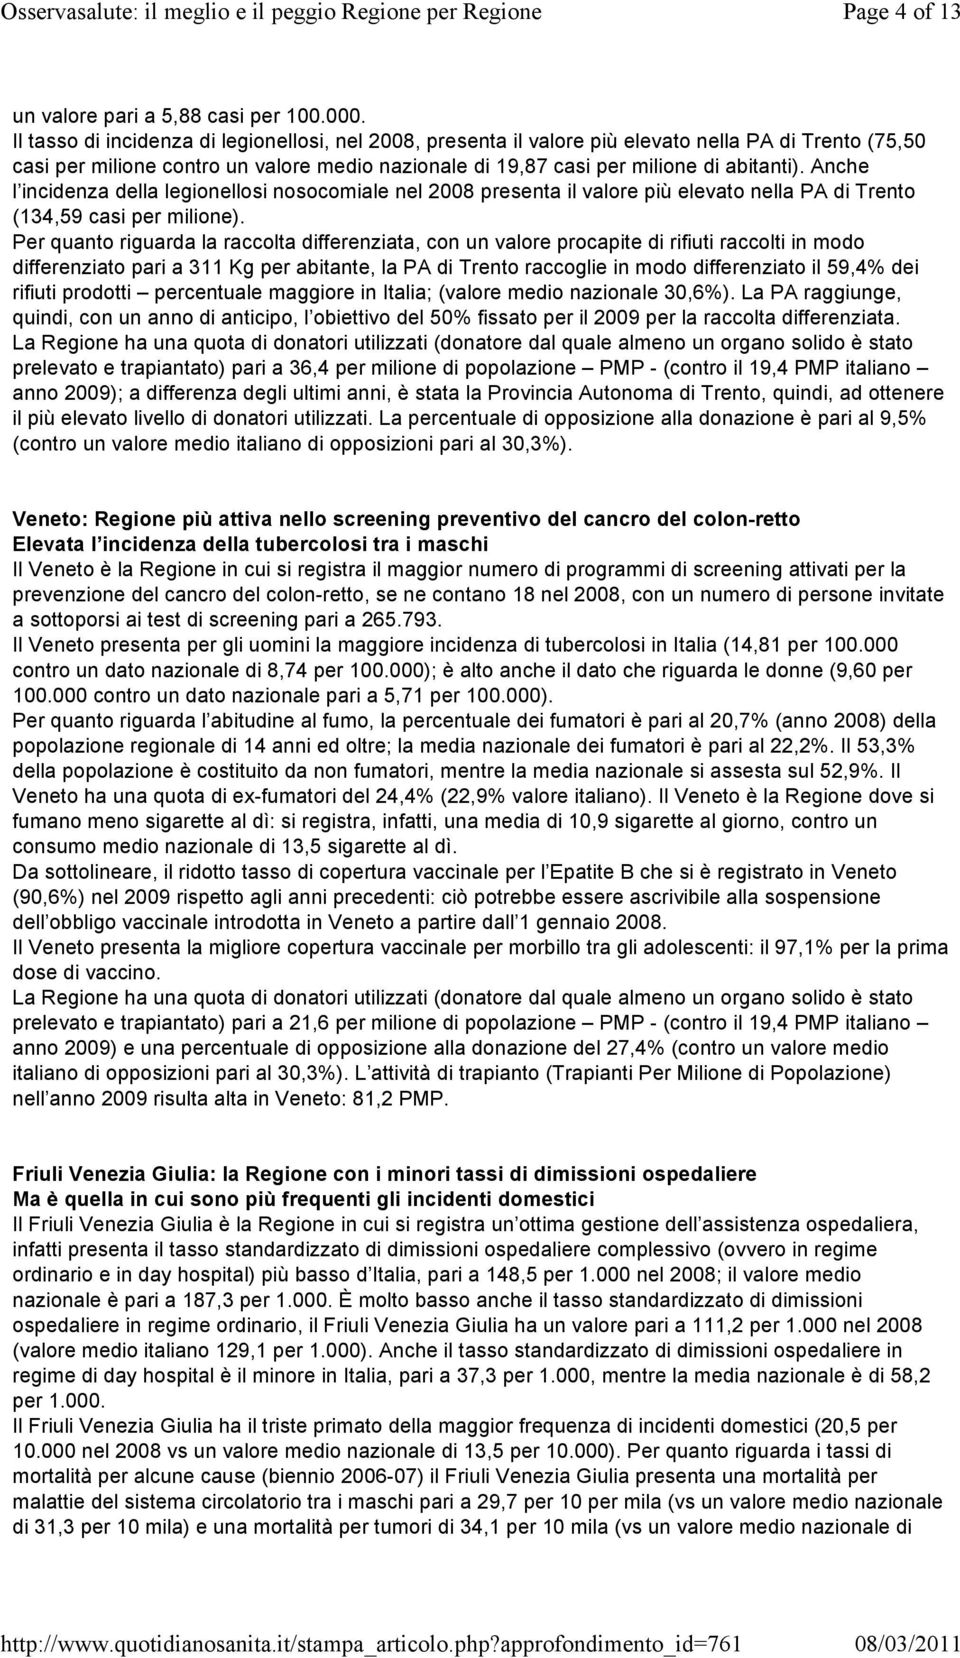 Anche l incidenza della legionellosi nosocomiale nel 2008 presenta il valore più elevato nella PA di Trento (134,59 casi per milione).